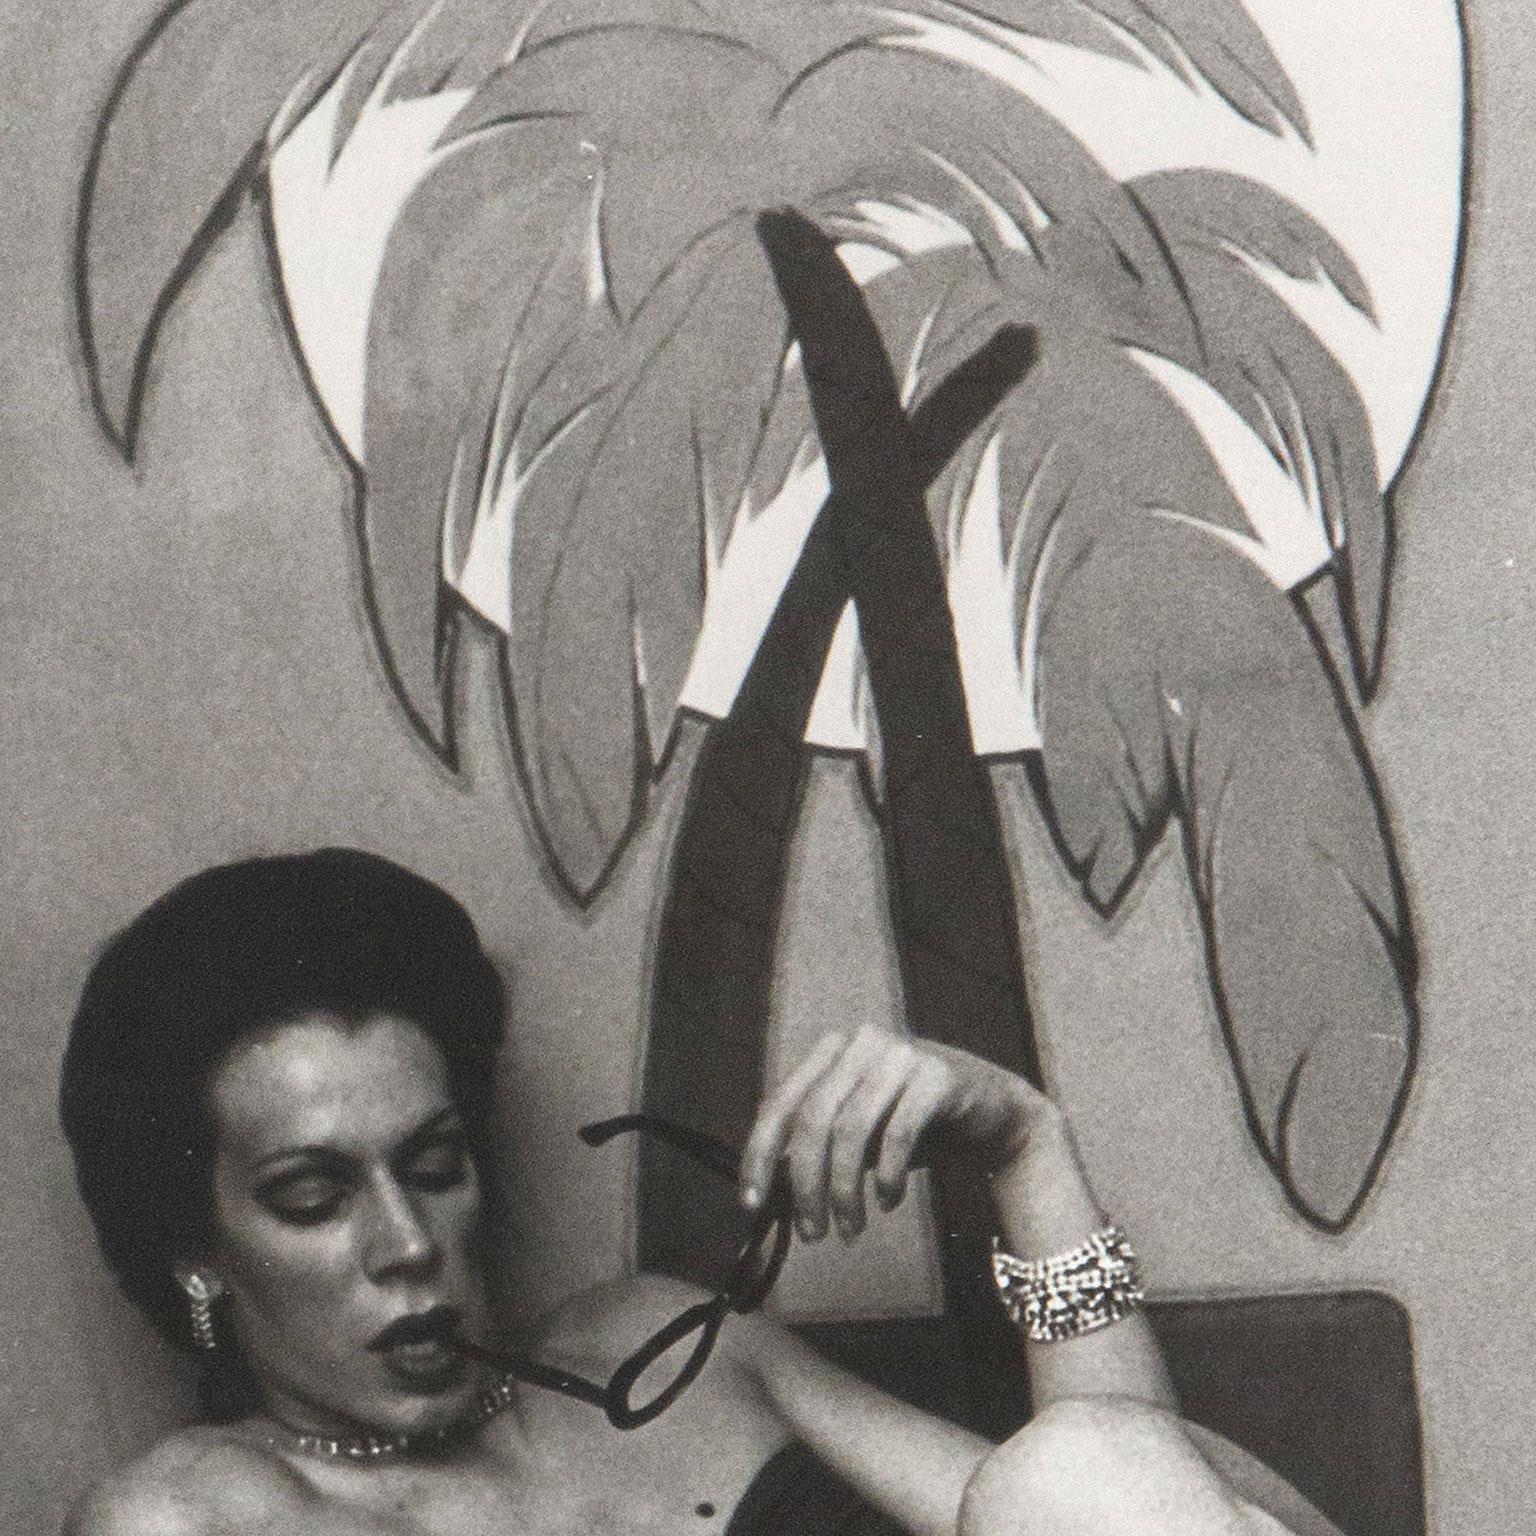 Nan Goldin (geb. 1953) ist eine der einflussreichsten Fotografinnen des 20. Jahrhunderts. Seit den 1970er Jahren machte Goldin Schnappschüsse von ihren Freunden und Liebhabern, die oft am Rande der Gesellschaft leben. Viele von Goldins Bildern sind